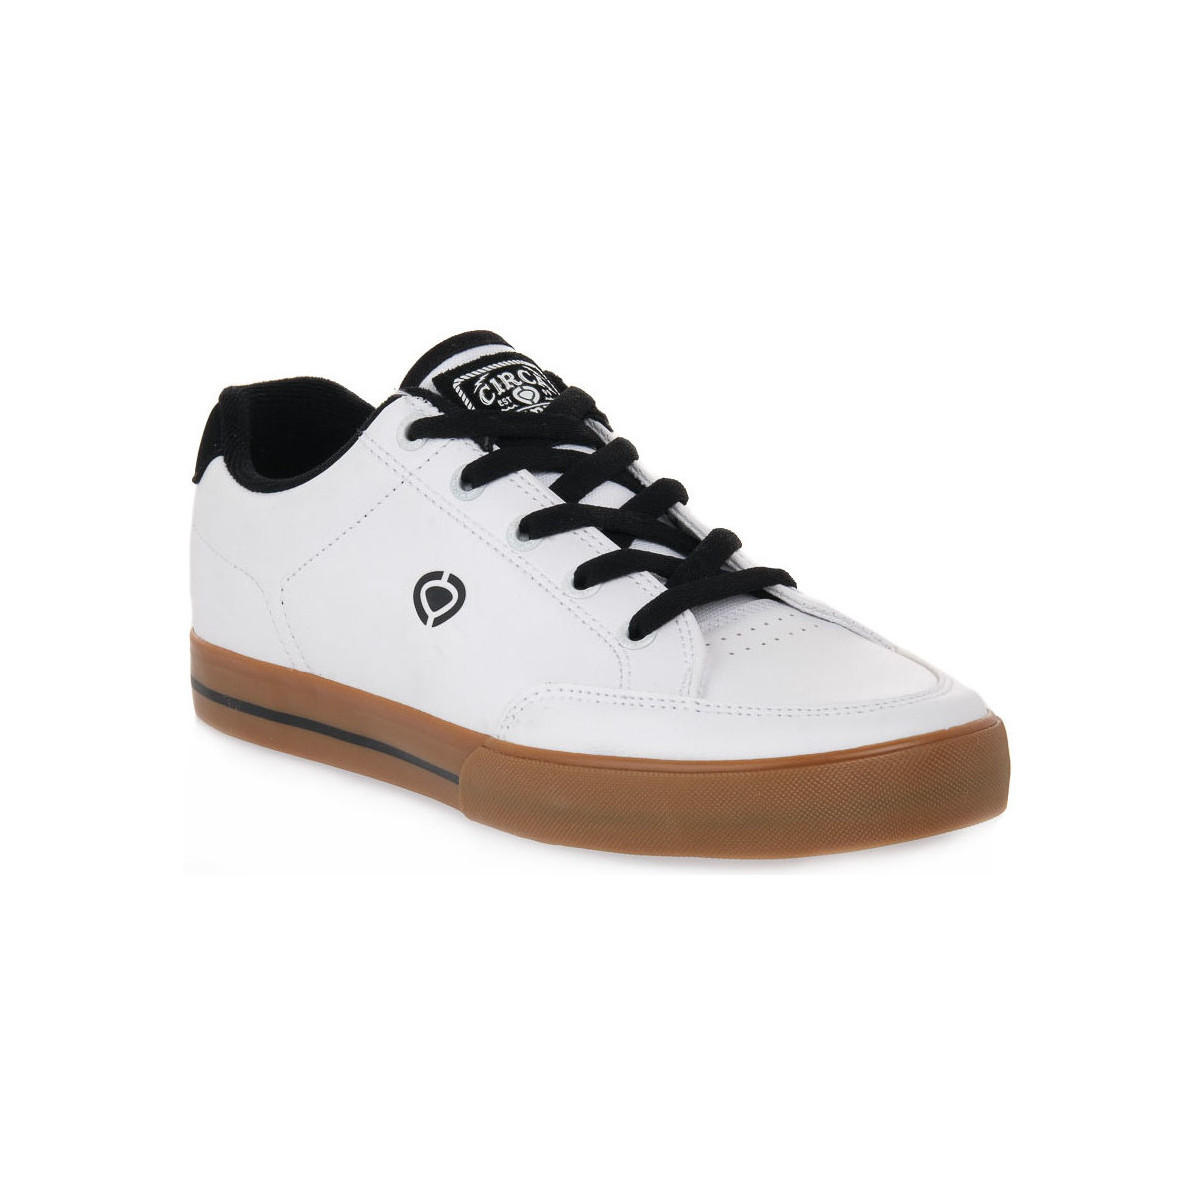 Topánky Univerzálna športová obuv C1rca AL 50 SLIM WHITE Biela